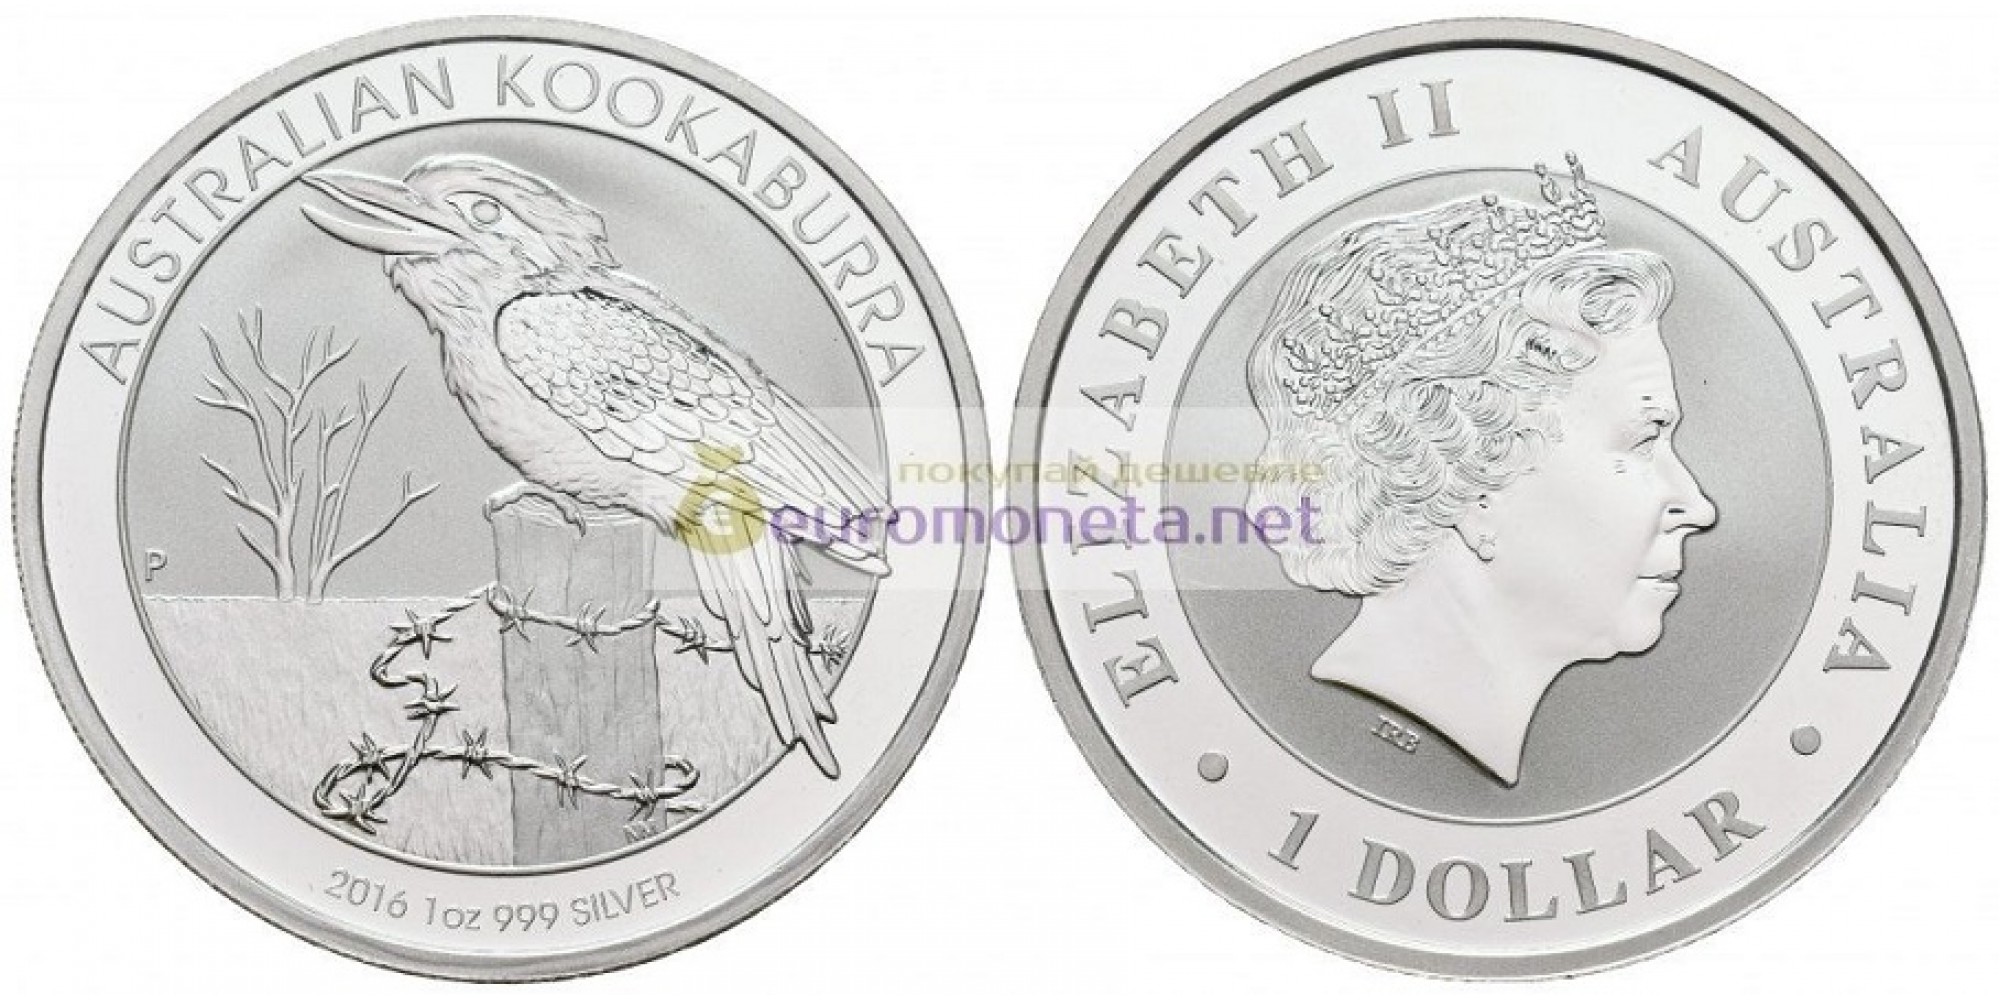 Австралия 1 доллар 2016 год Австралийская Кукабарра kookaburra. Серебро. пруф / proof